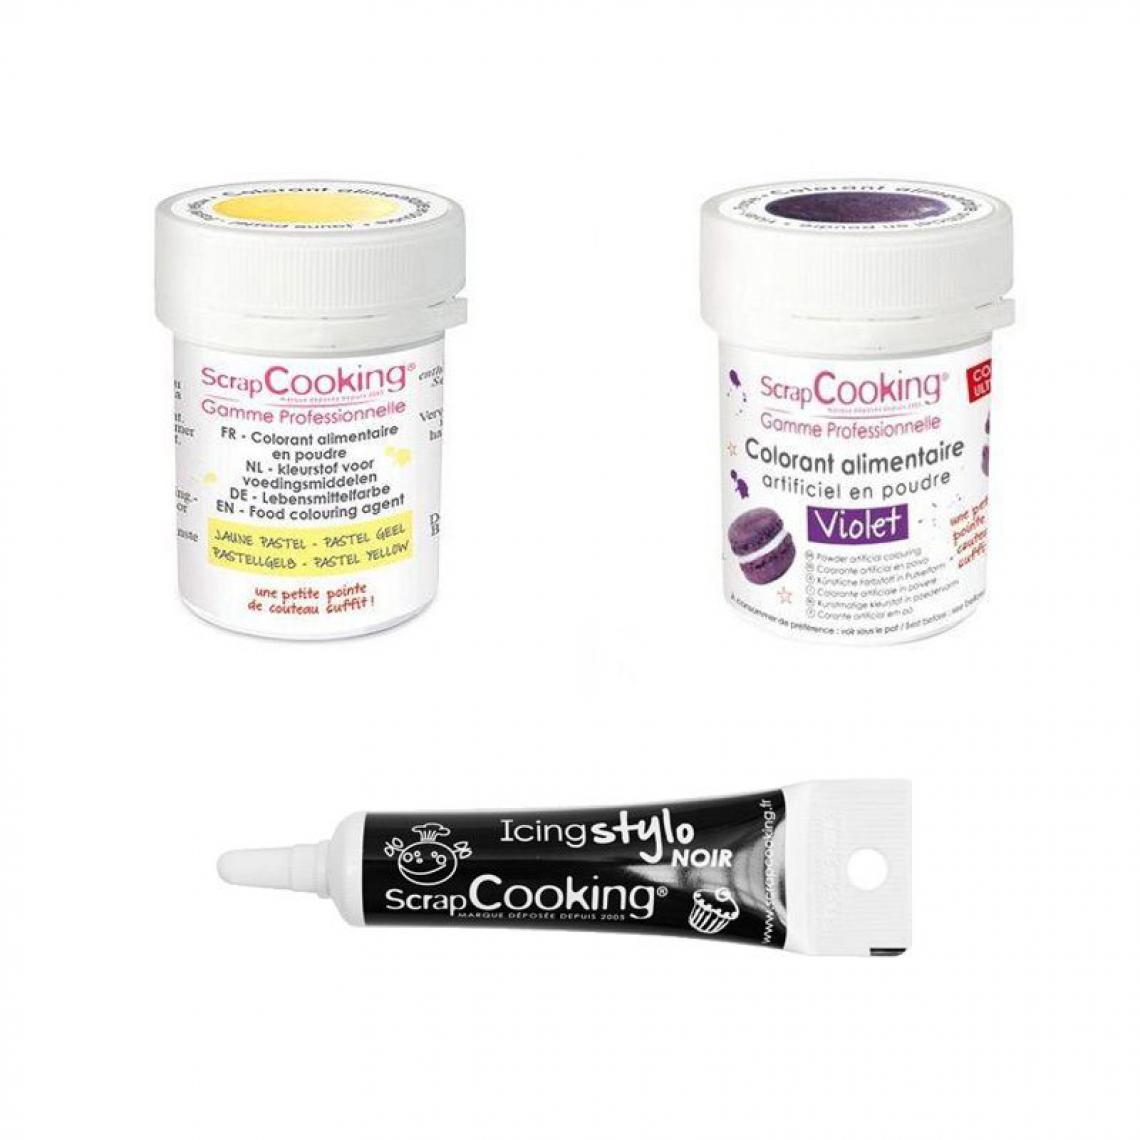 Scrapcooking - 2 colorants alimentaires violet-jaune pastel + Stylo glaçage noir - Kits créatifs